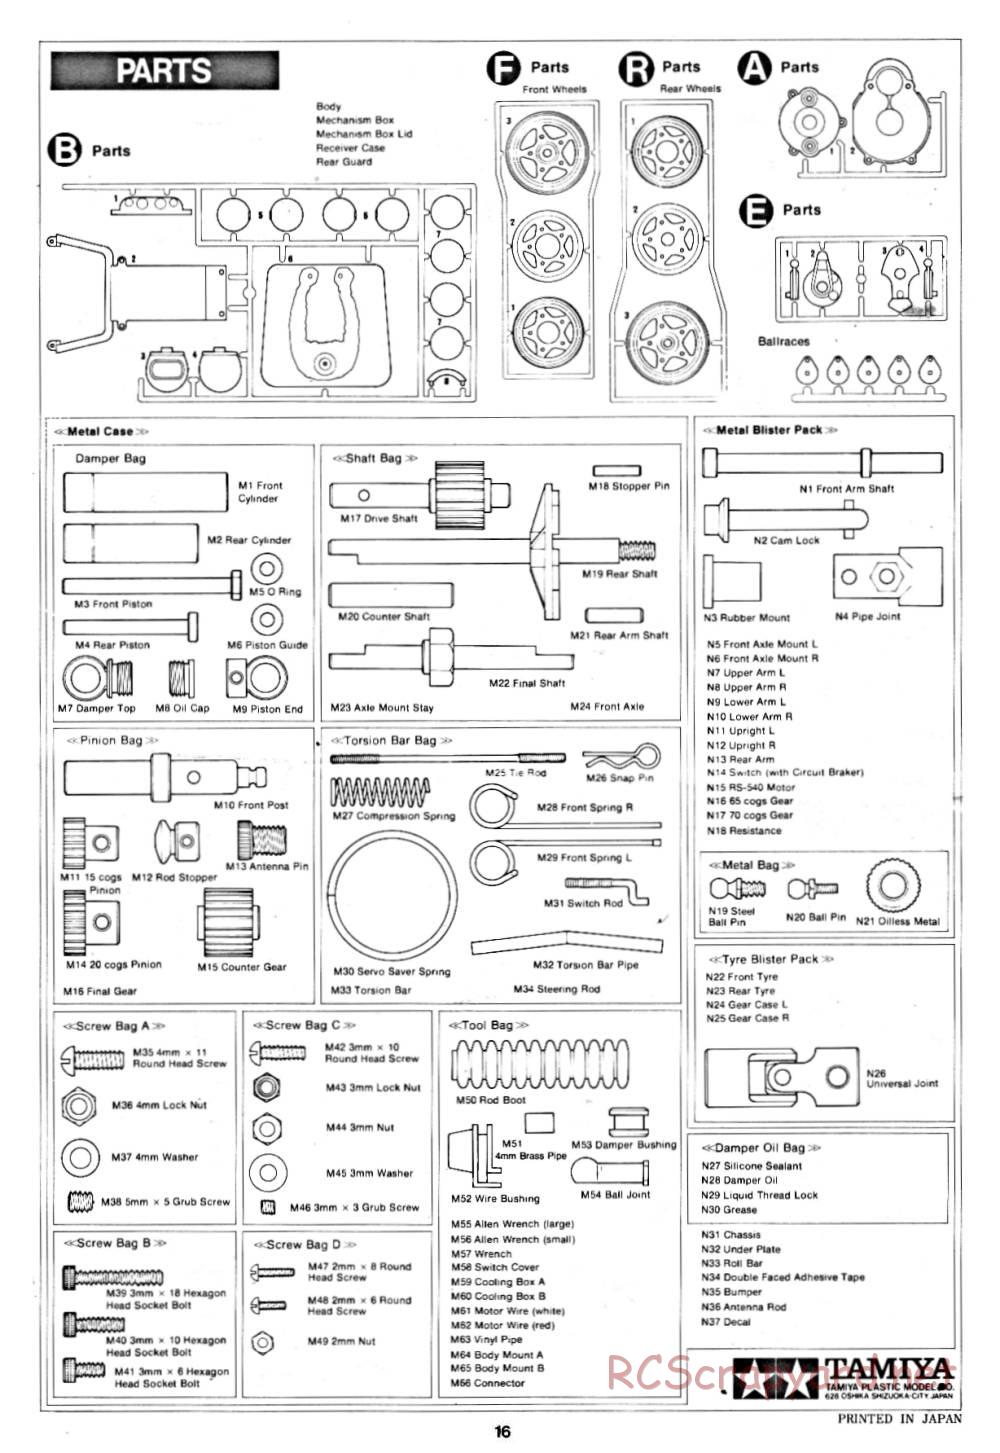 Tamiya - Rough Rider - 58015 - Manual - Page 16